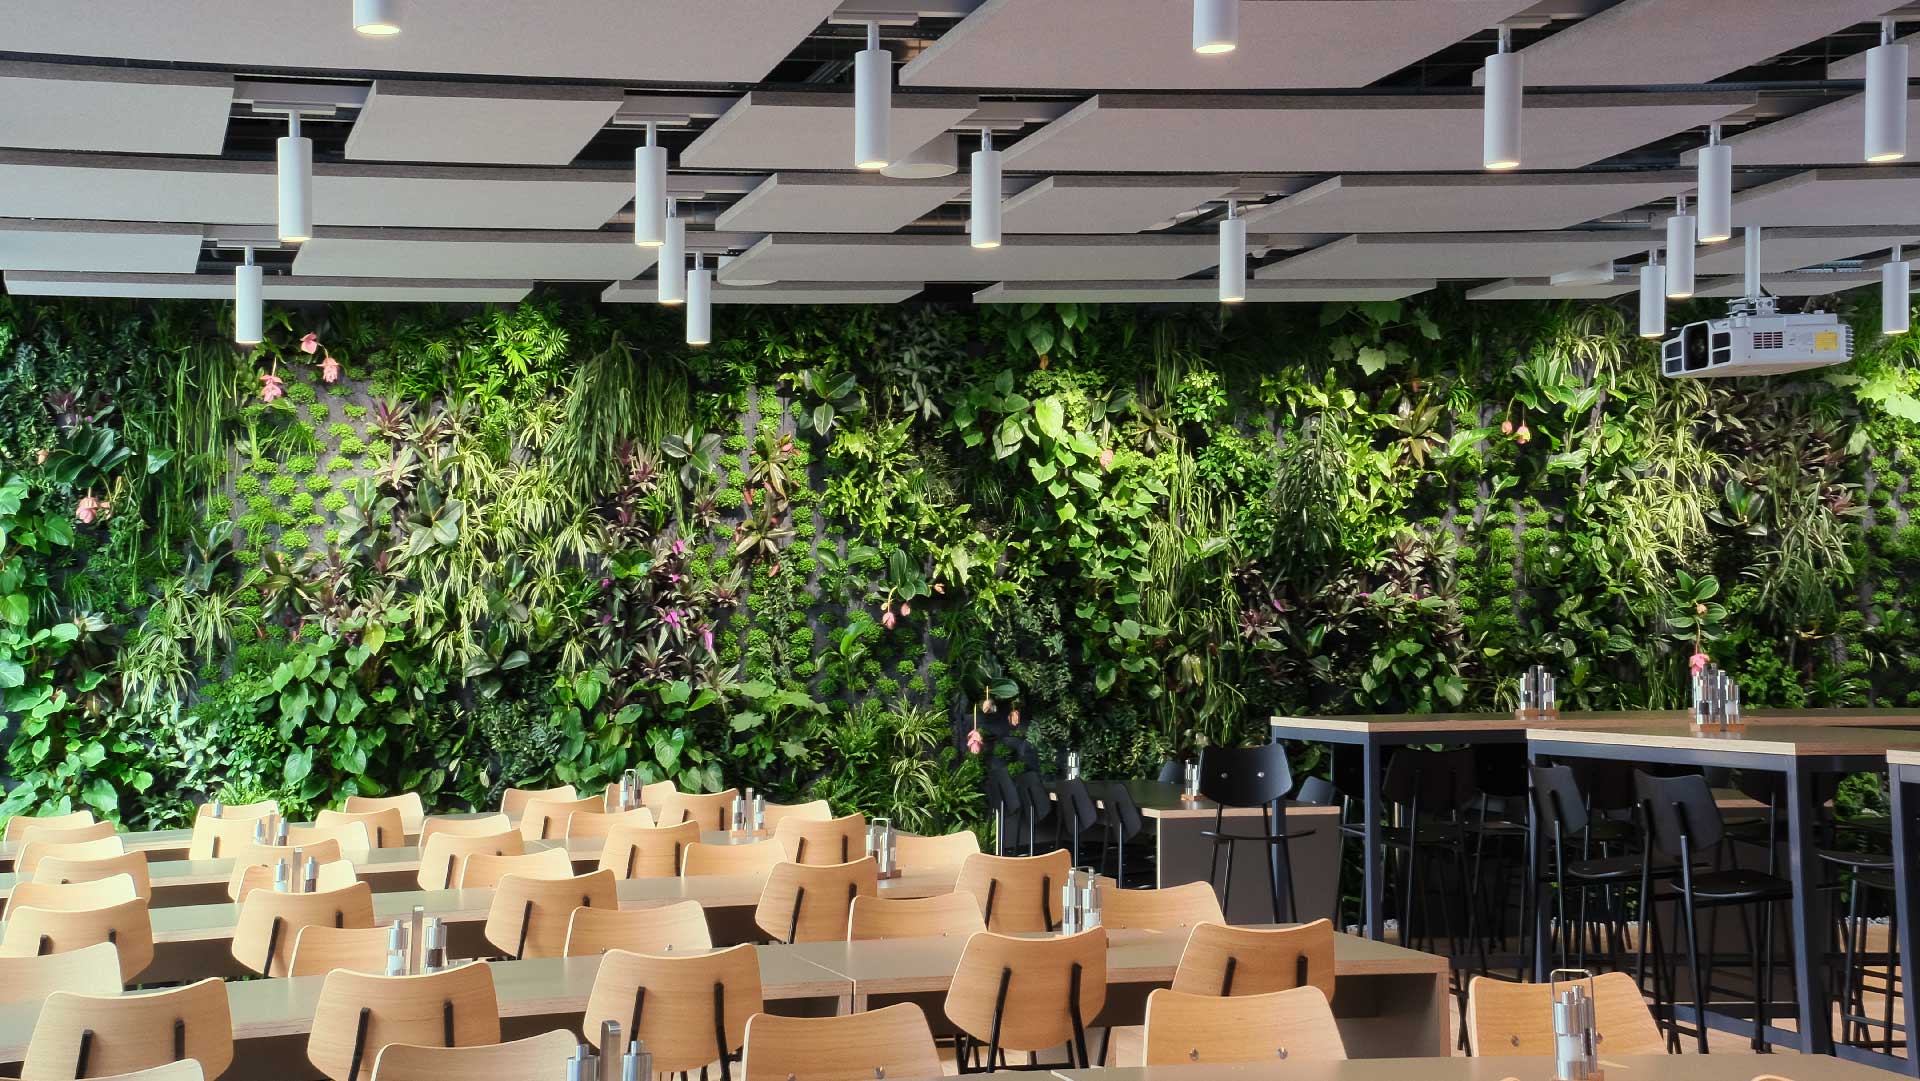 modernes restaurant-interieur mit reihen von holztischen und -stühlen, einem barbereich und einer großen pflanzenwand an der wand. grüne architektur!